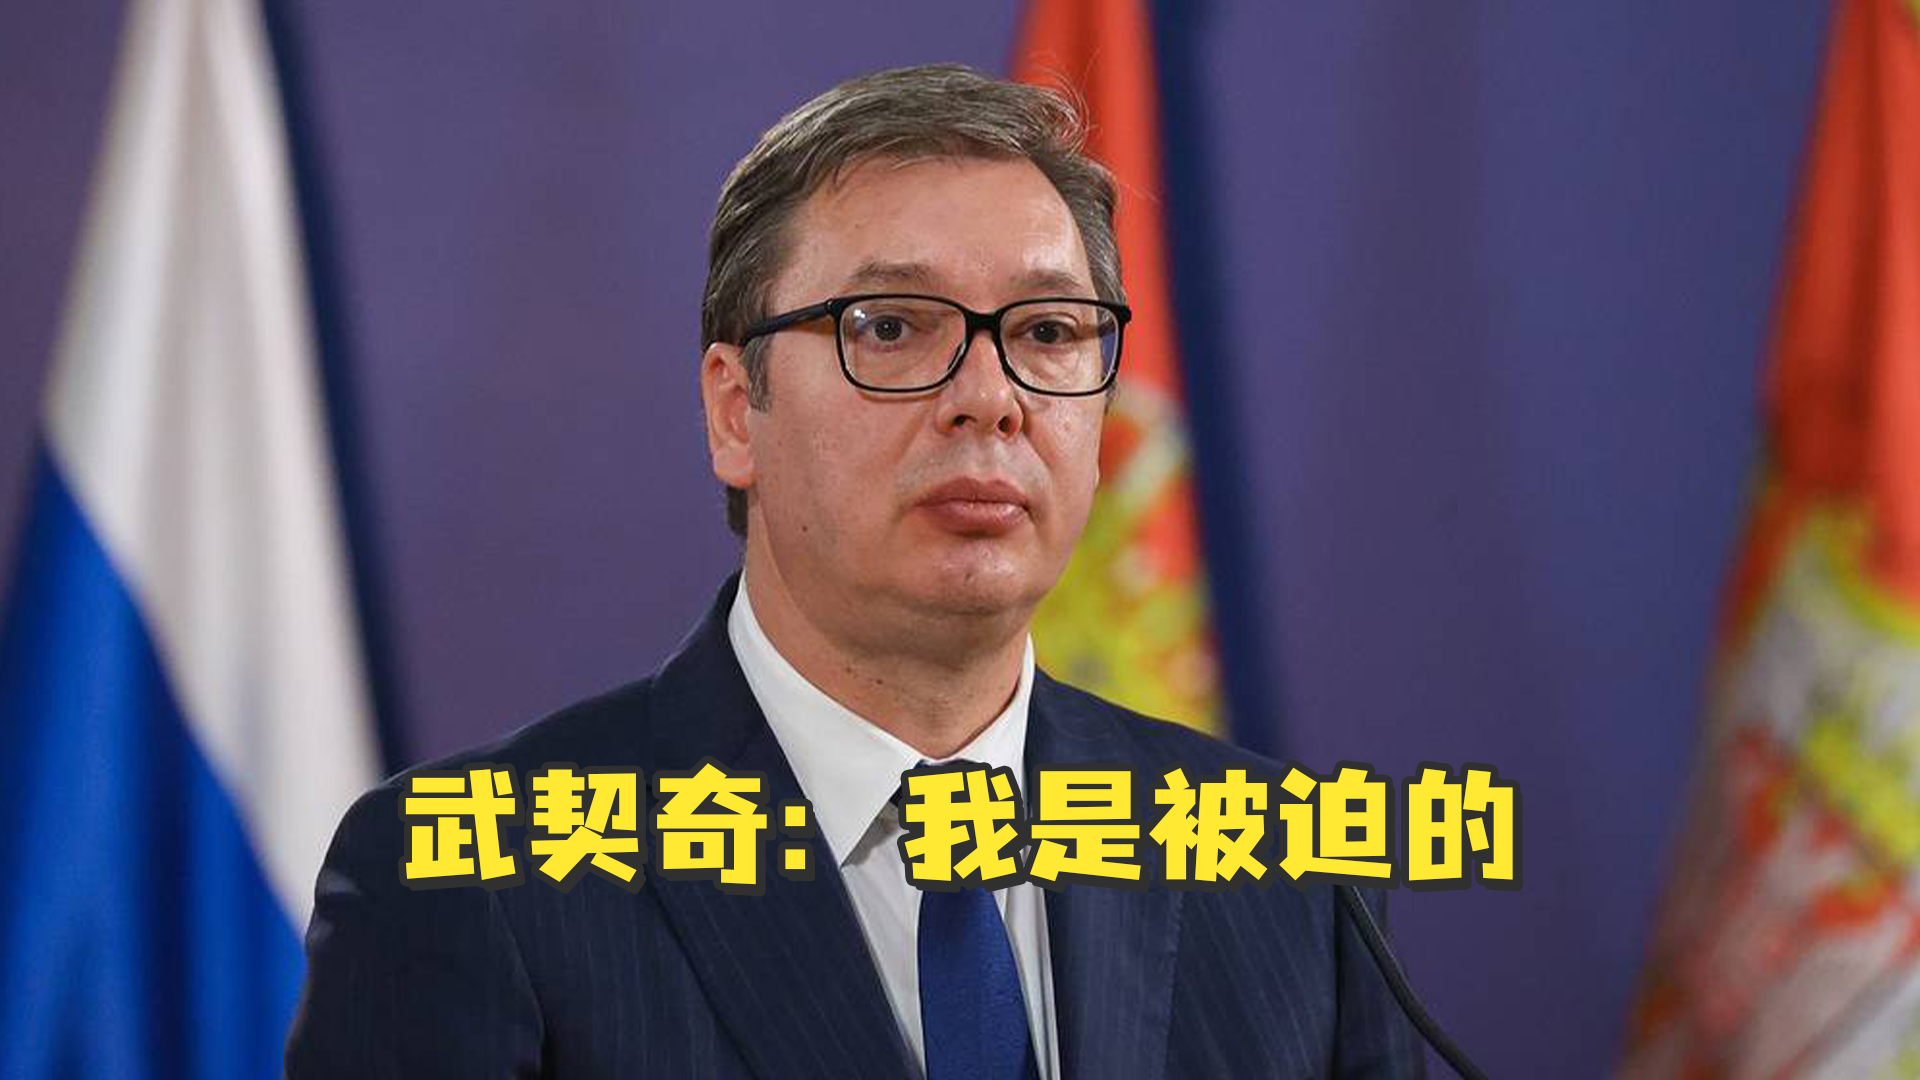 塞尔维亚总统武契奇宣布在首轮总统选举中胜出